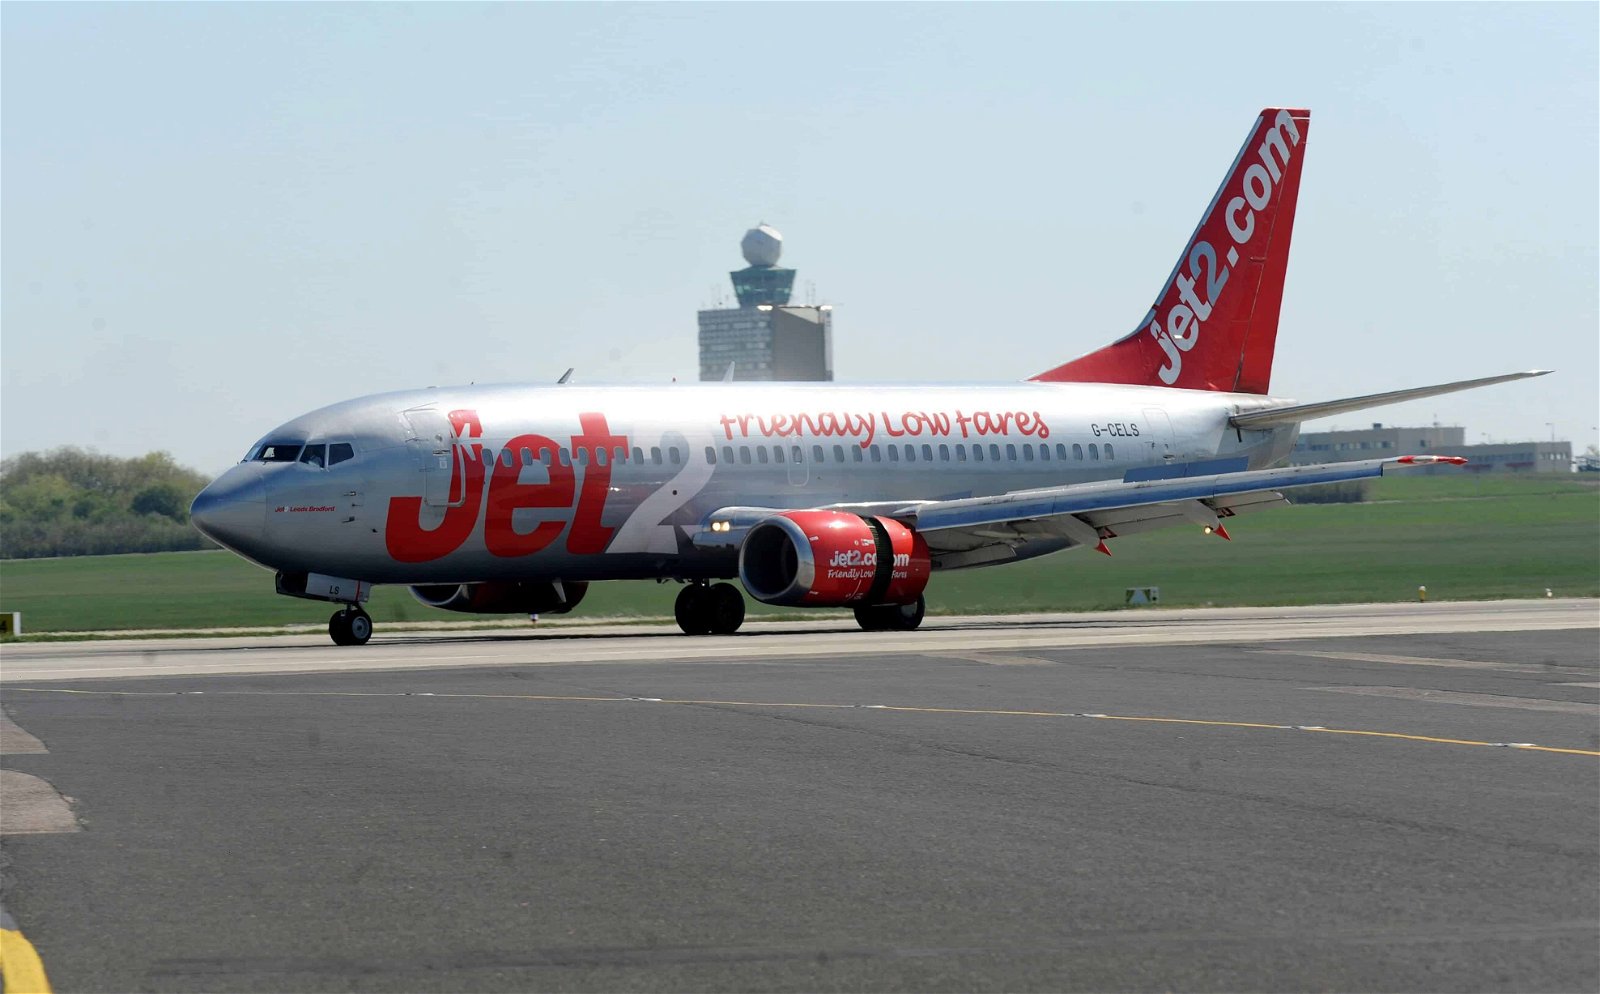 Een vliegtuig van low cost-maatschappij Jet2.com rijdt over de tarmac.